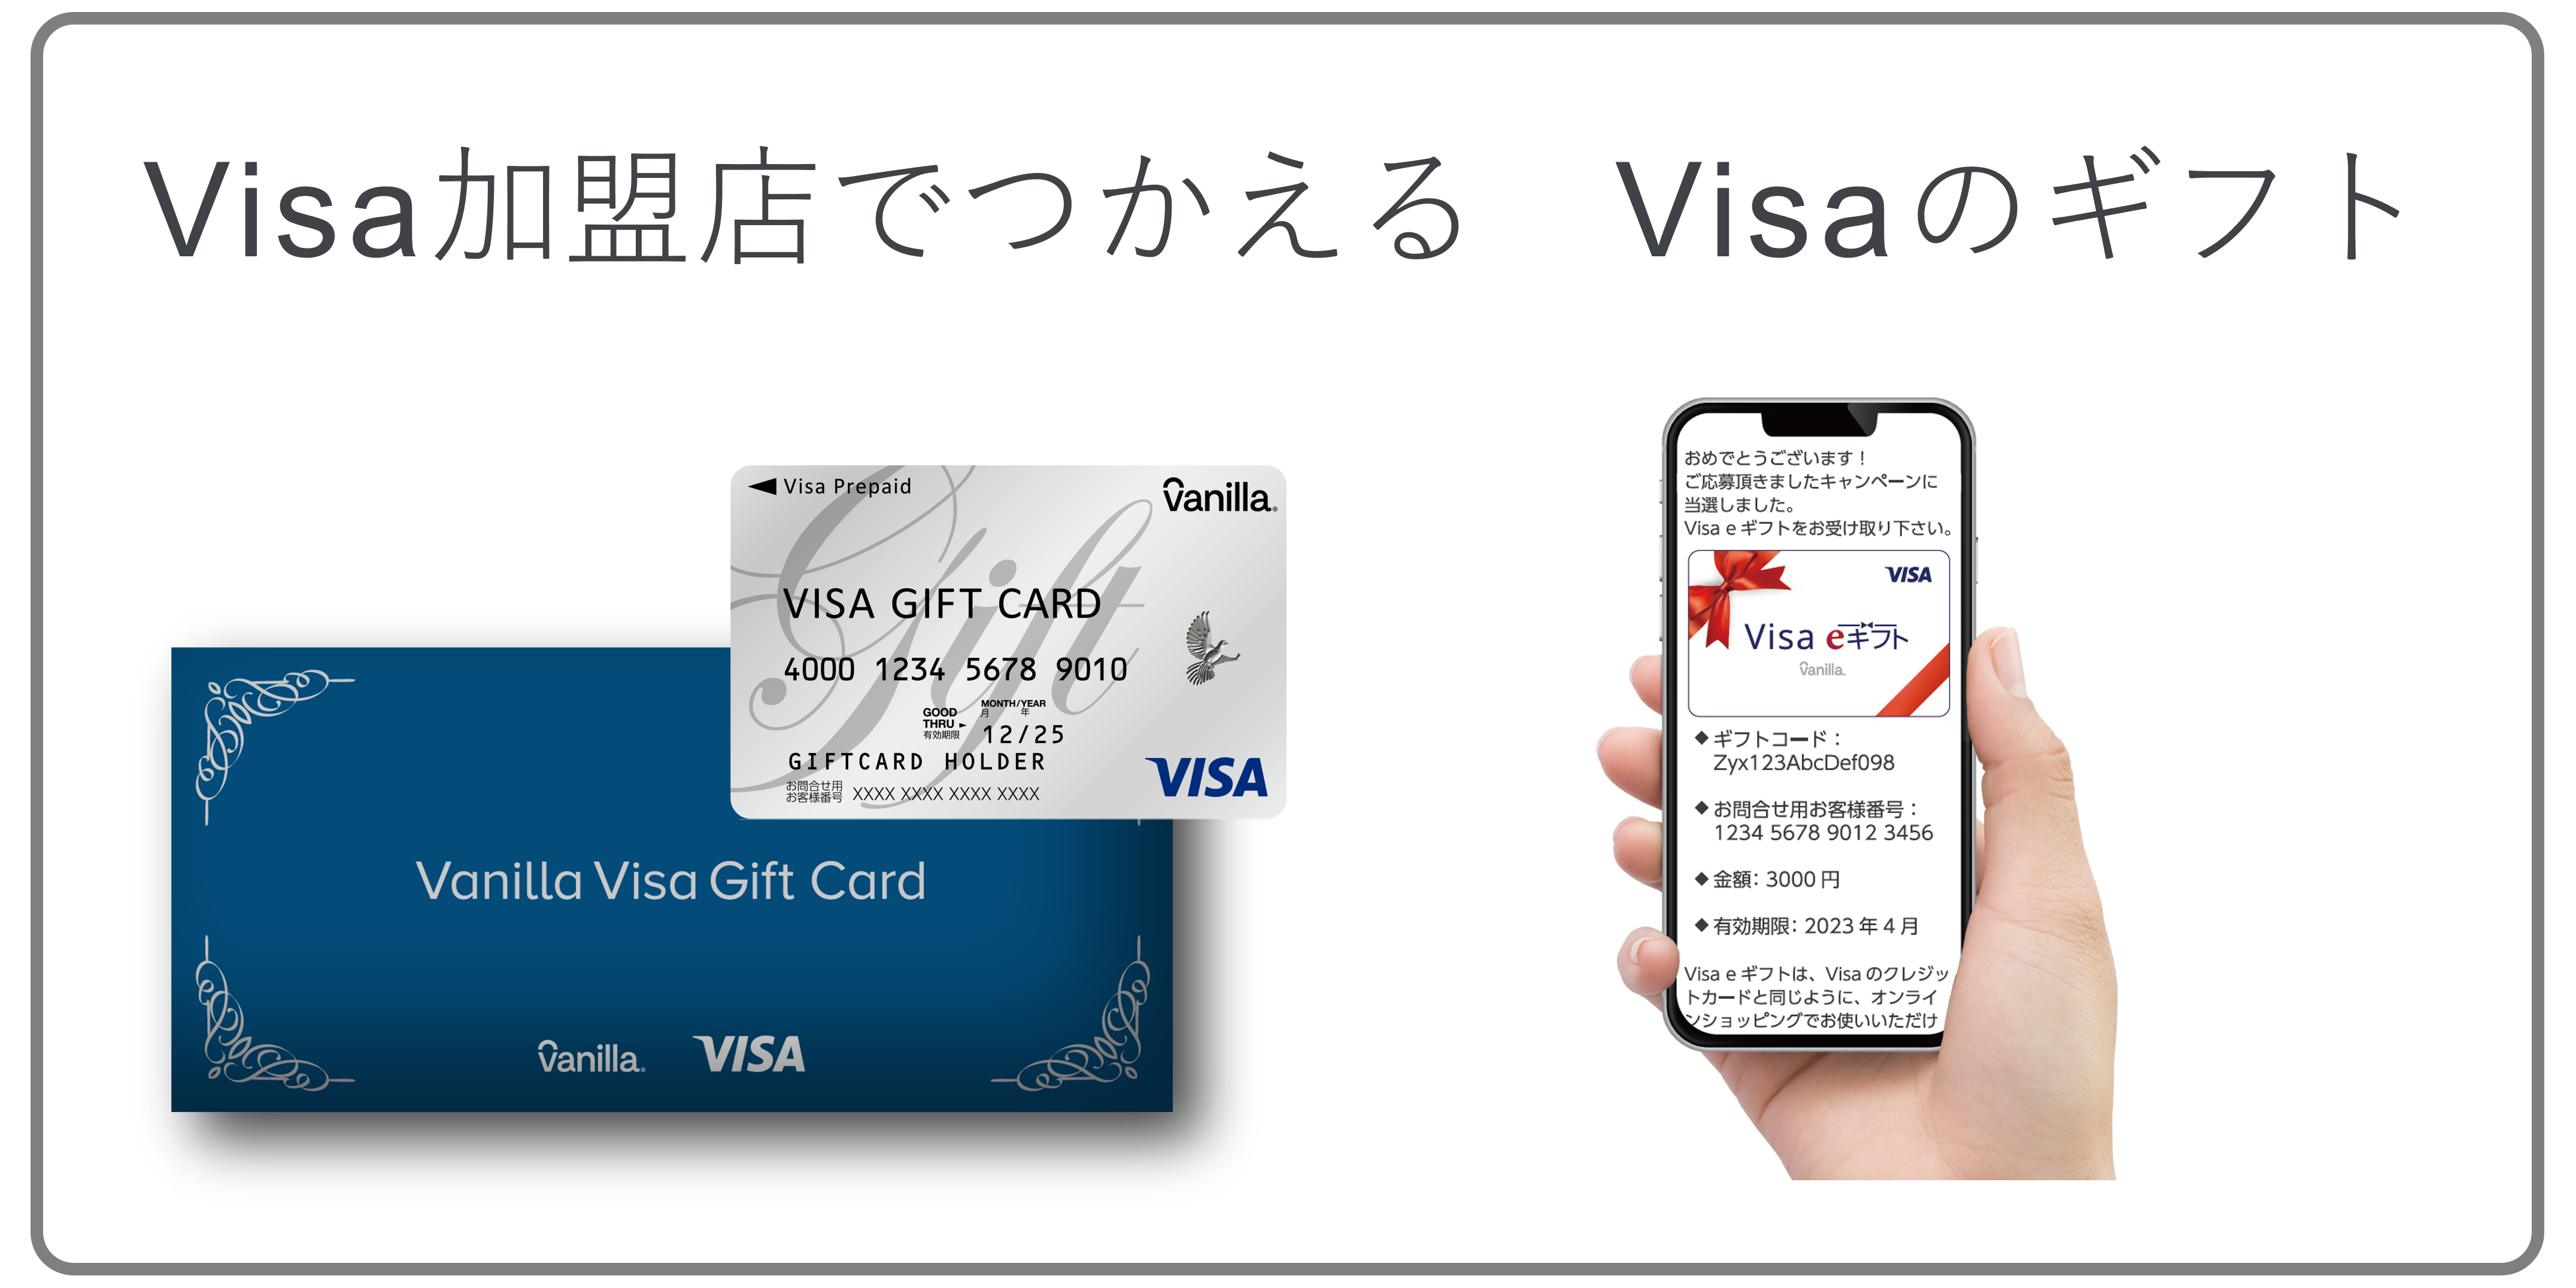 Visa加盟店でつかえるVisaのギフト